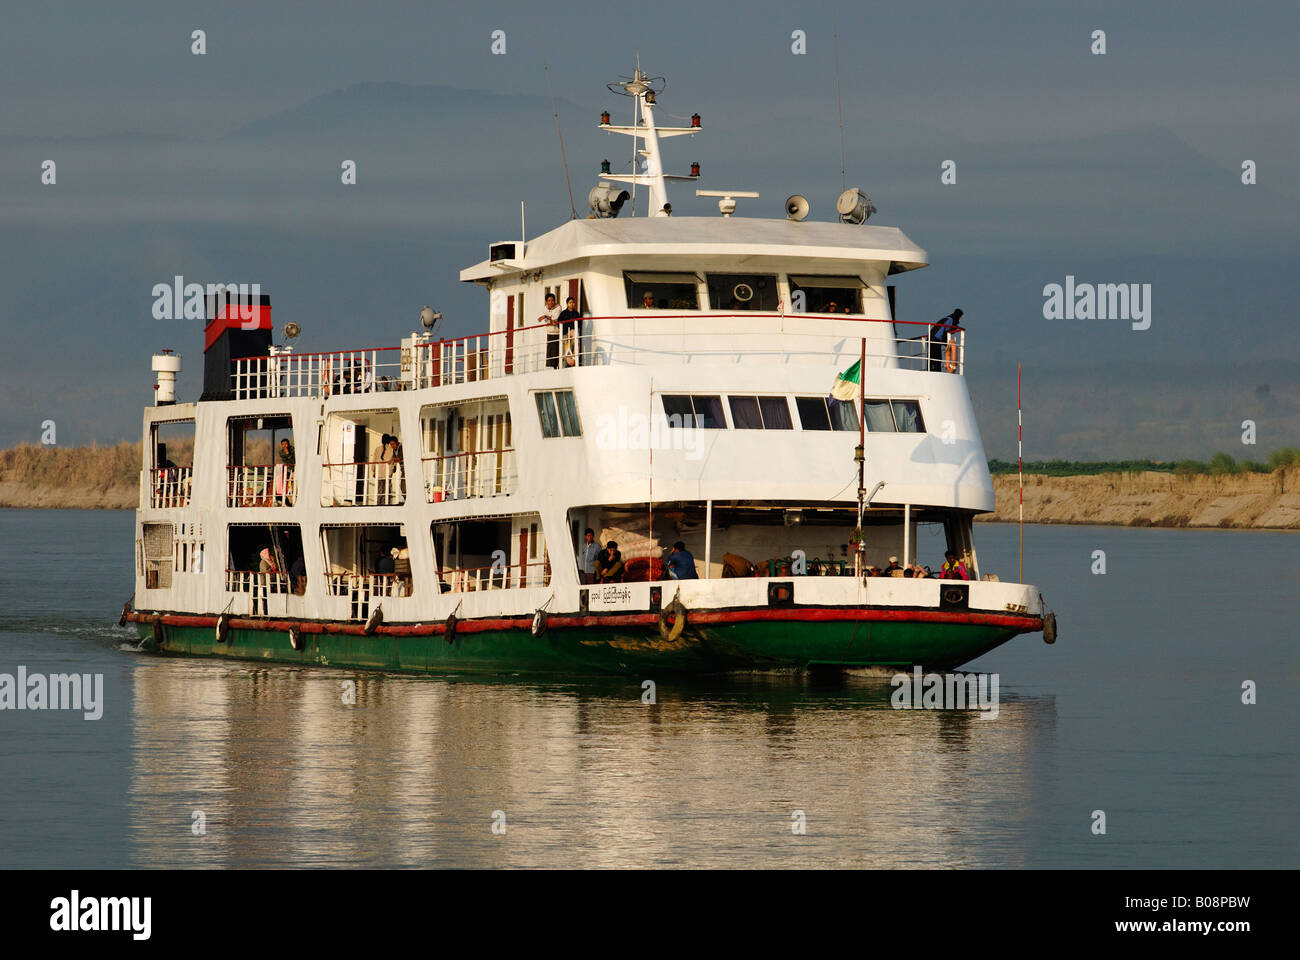 Barca fluviale sull'Irrawaddy Irawadi o fiume, Myanmar (Birmania), Sud-est asiatico Foto Stock